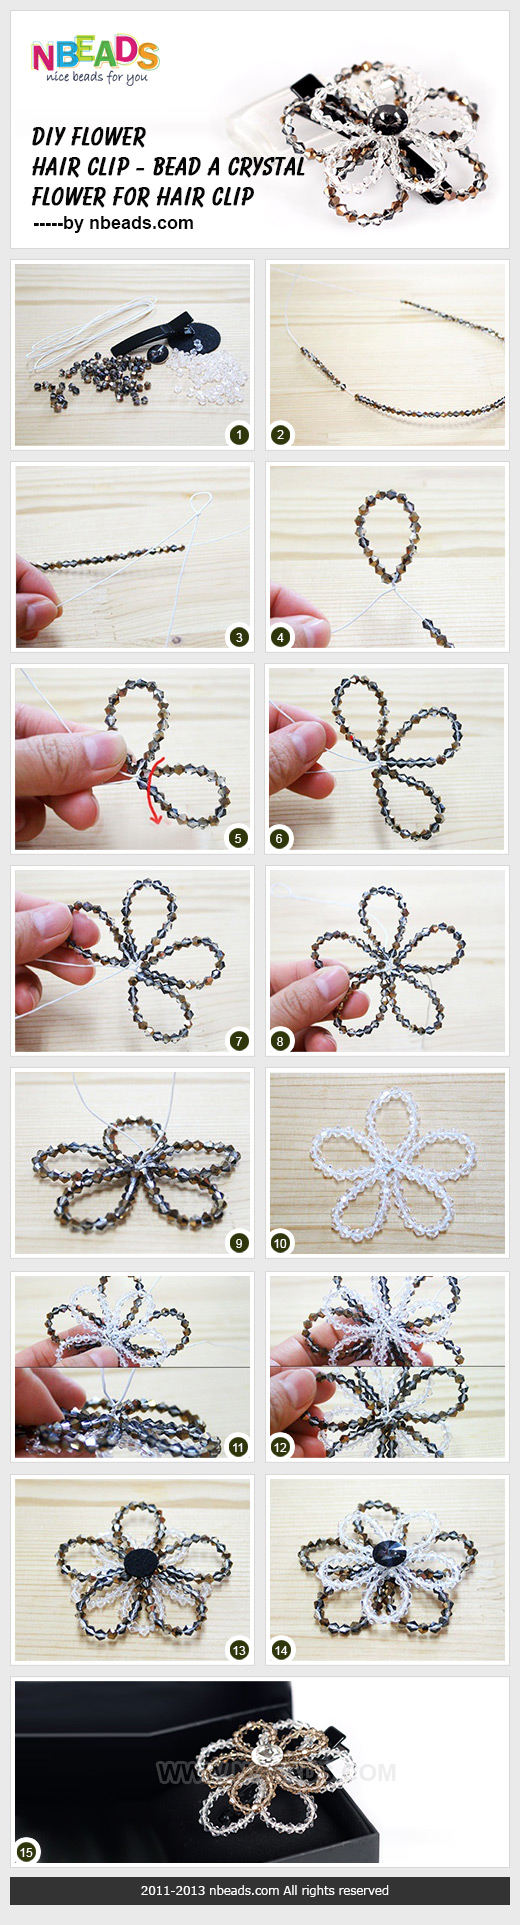 diy flower hair clip - bead a crystal flower for hair clip